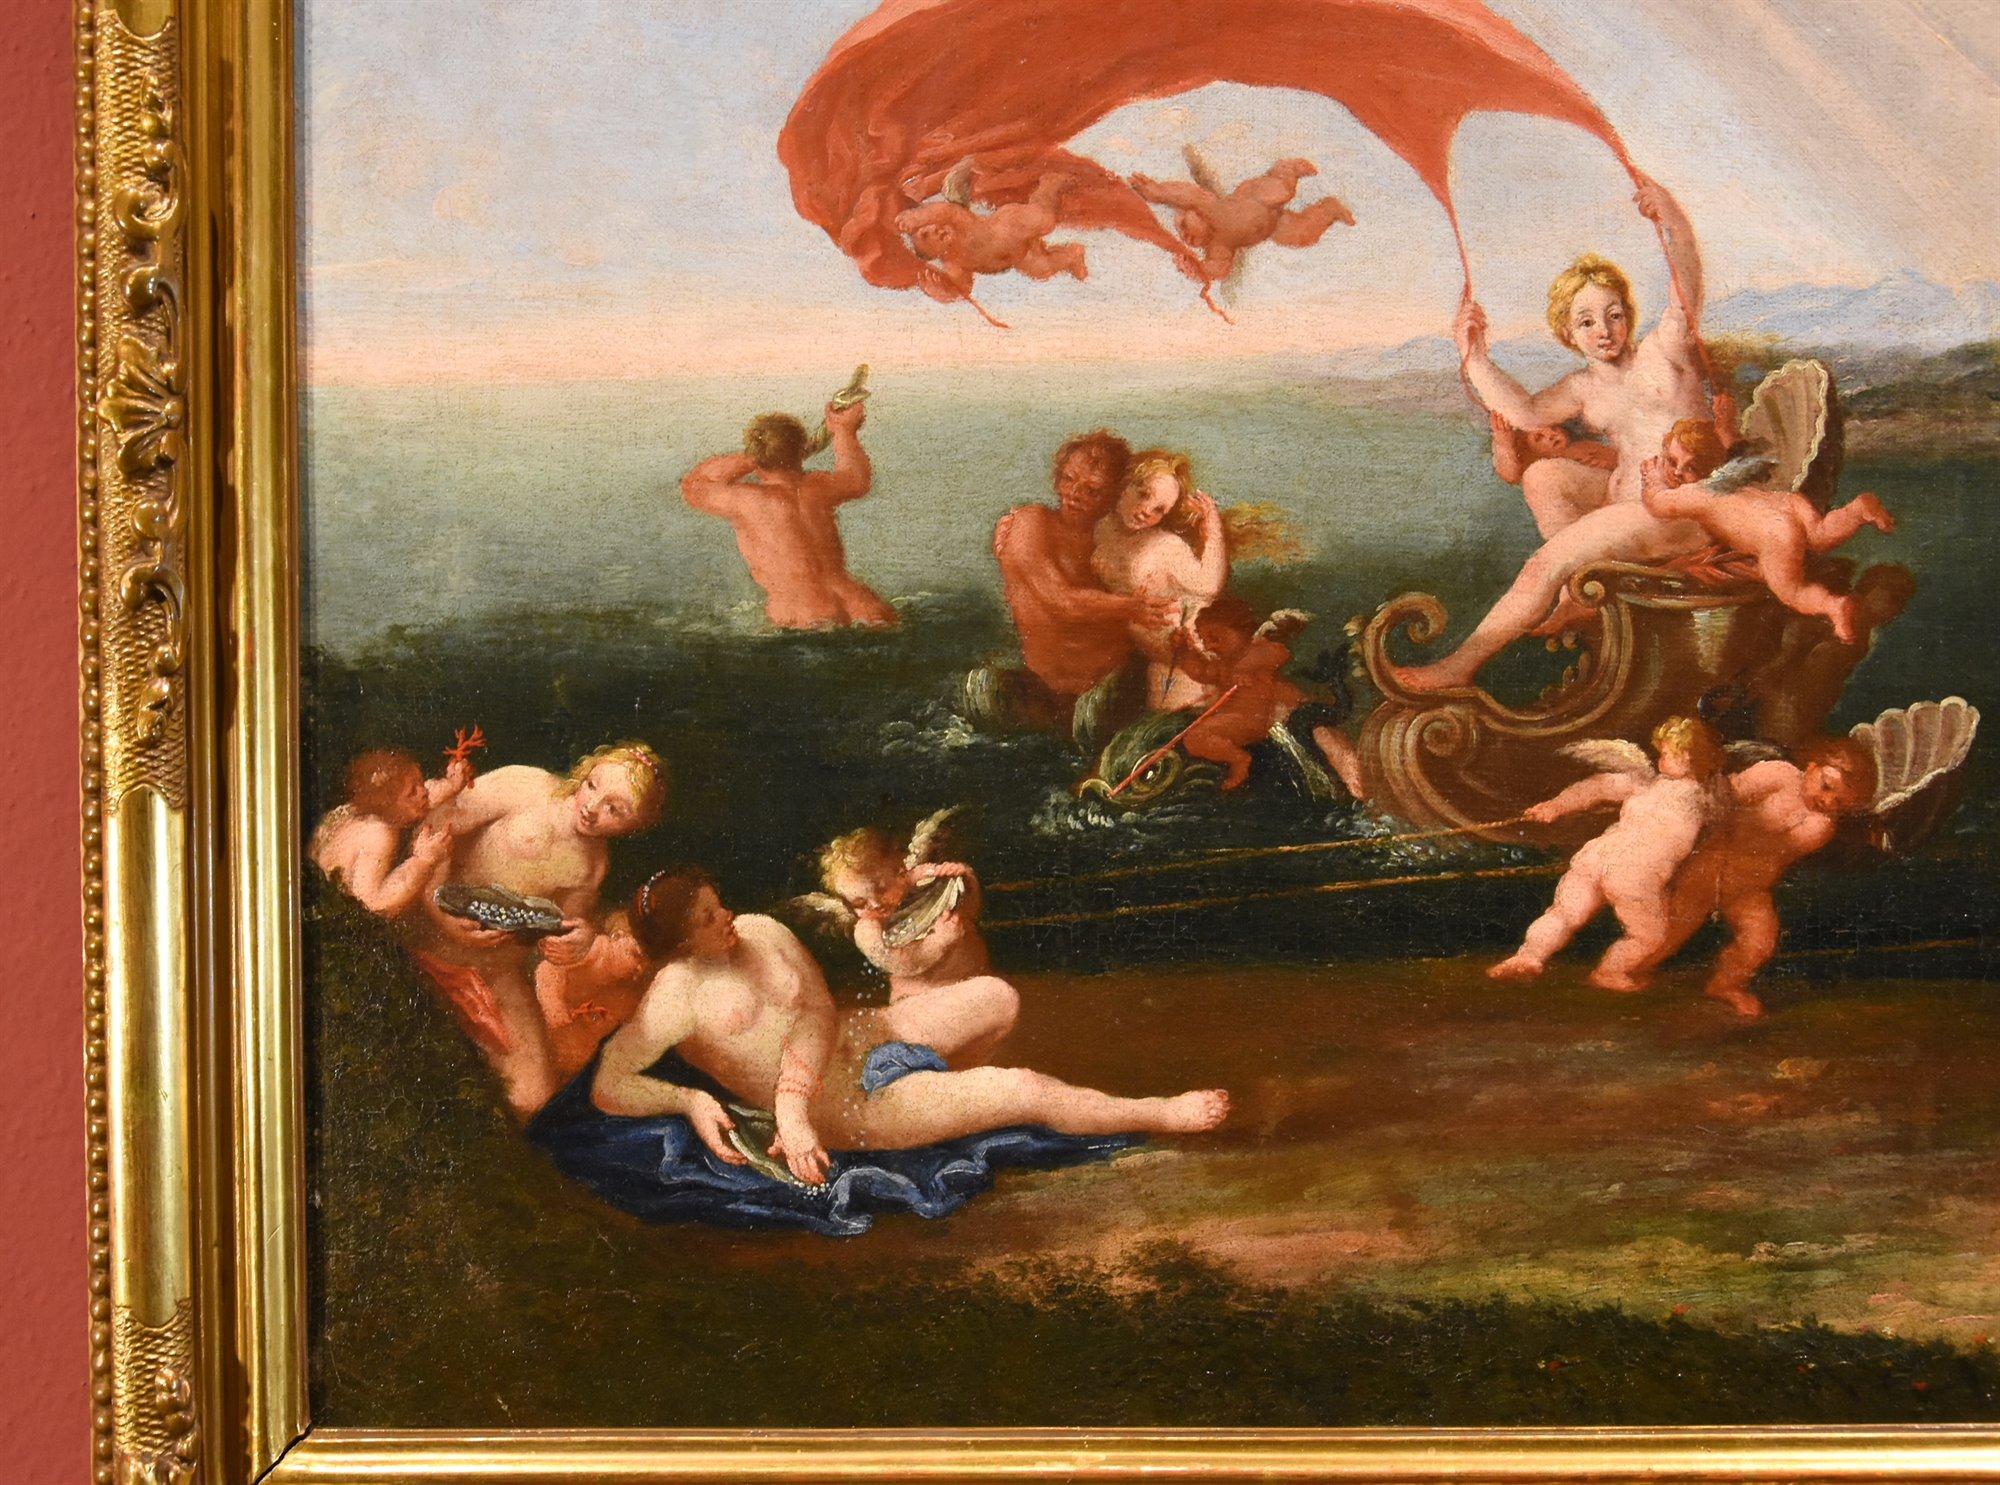 Francesco Albani (Bologne 1578 - 1660) Cercle de
Le triomphe de la nymphe Galatea (ou allégorie de l'eau)
d'après Ovide, Métamorphoses, livre XIII

Huile sur toile (53 x 72 cm. - dans le cadre 62 x 82 cm.)

La belle peinture proposée, représentant